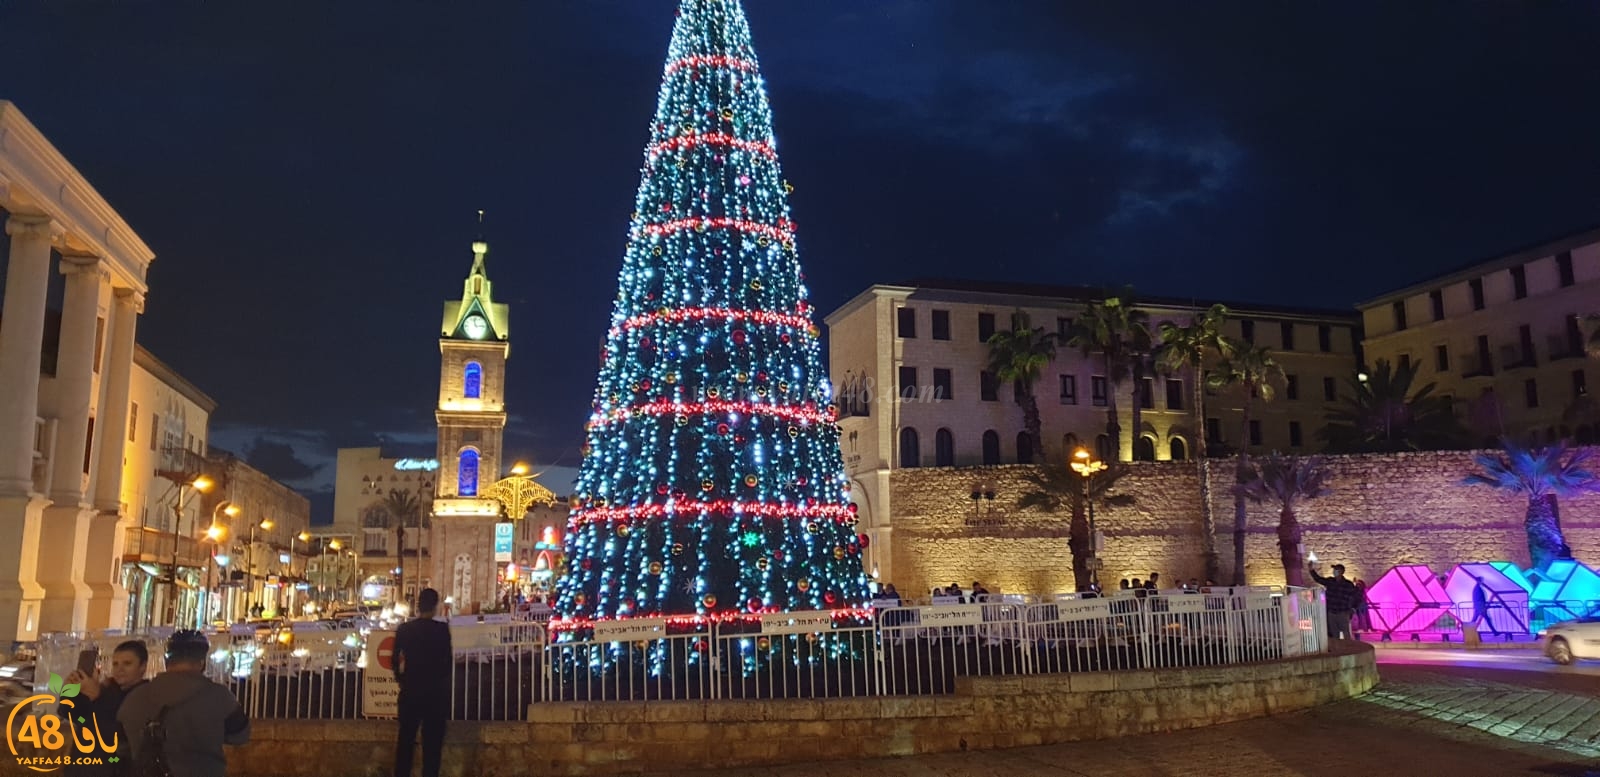  اضاءة شجرة الميلاد في مدينة يافا وسط غياب الأجواء الاحتفالية